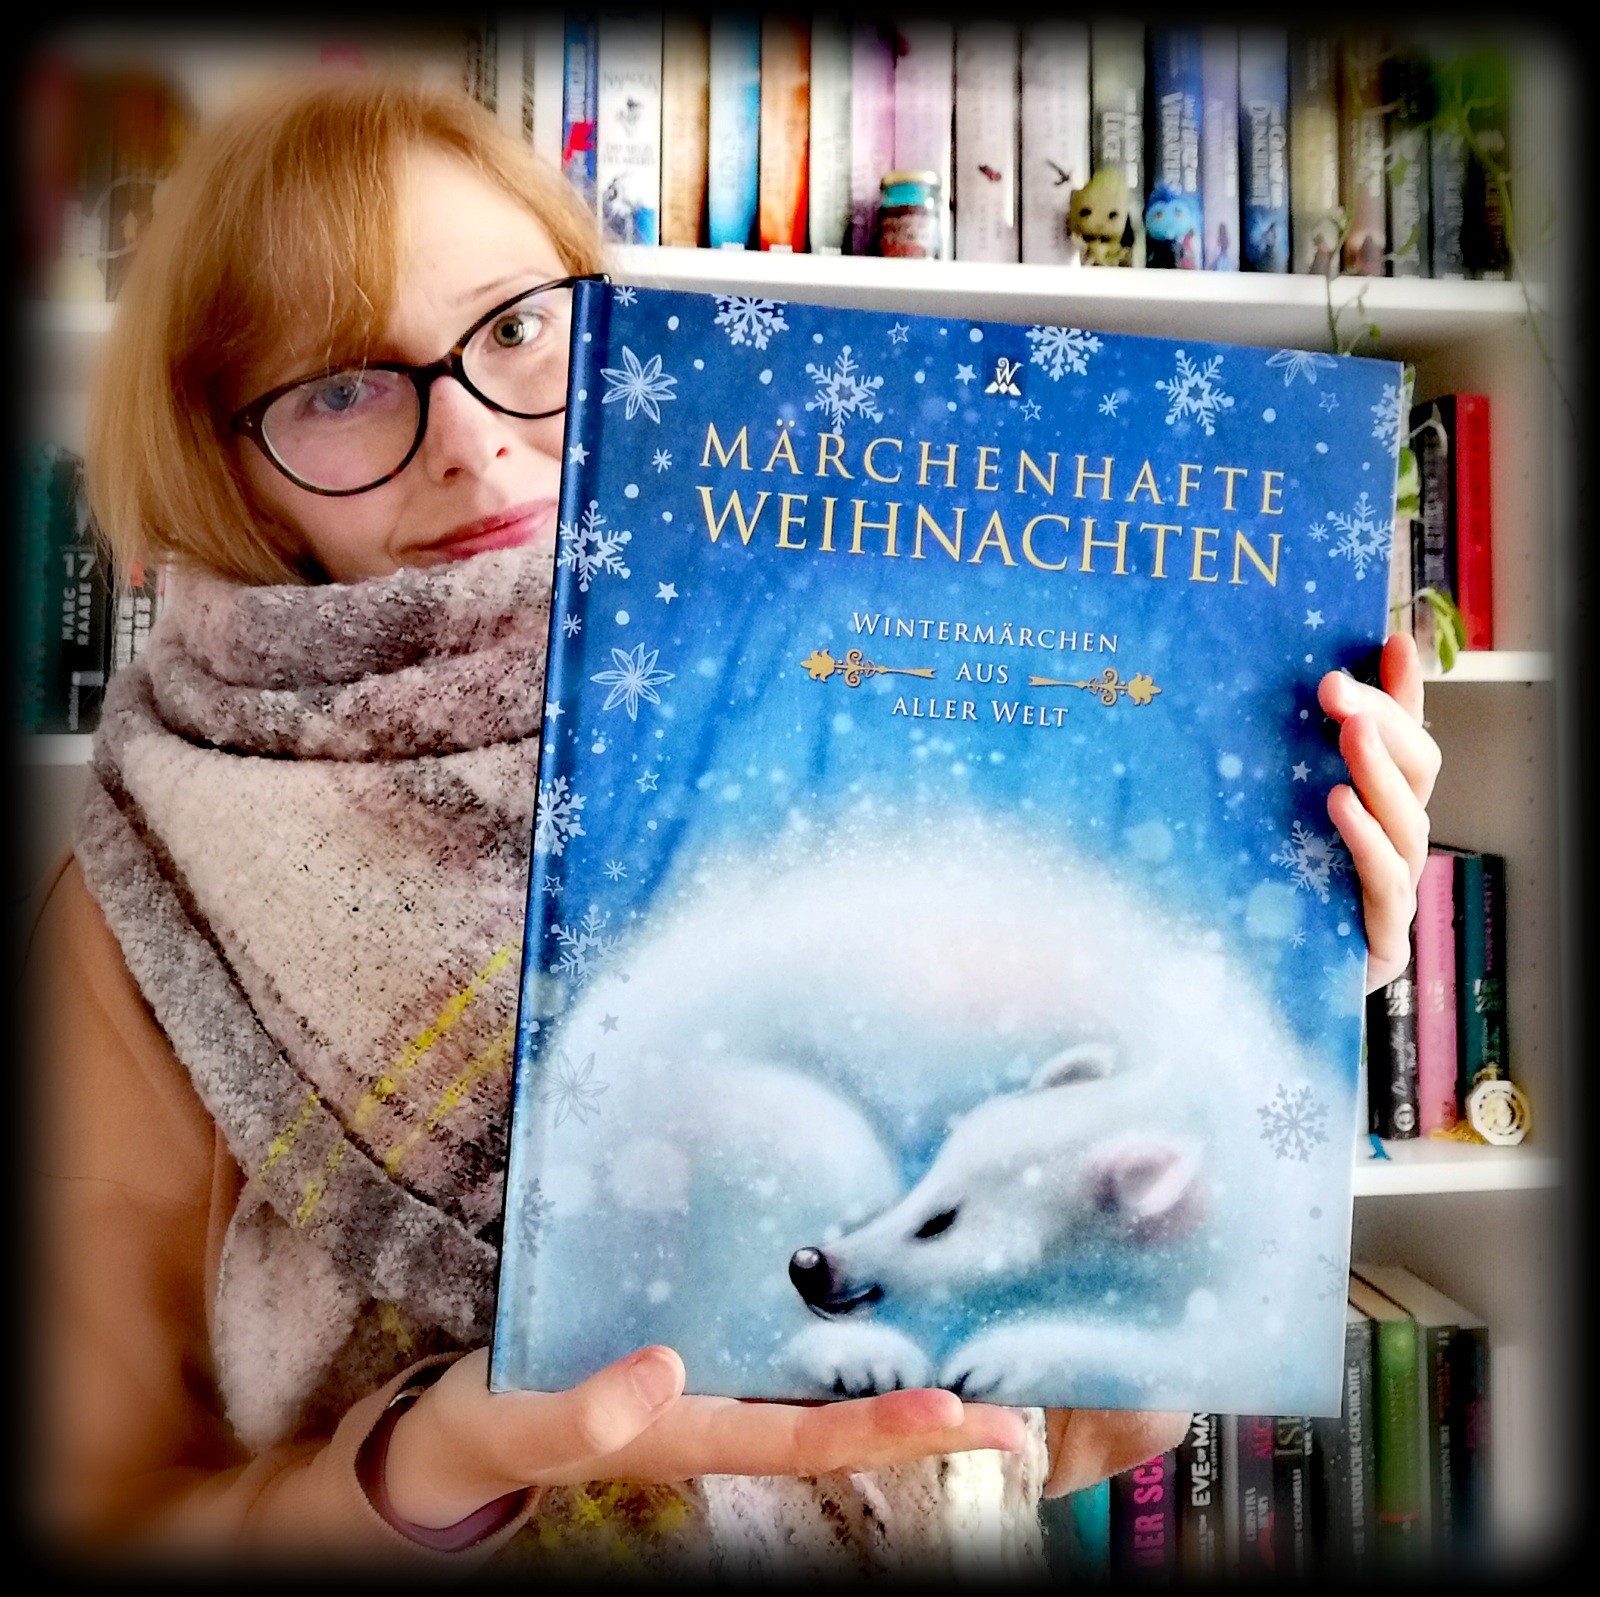 "Märchenhafte Weihnachten - Wintermärchen aus aller Welt" aus dem Wunderhaus Verlag - Ich staunte über die ein oder andere mir noch unbekannte Geschichte